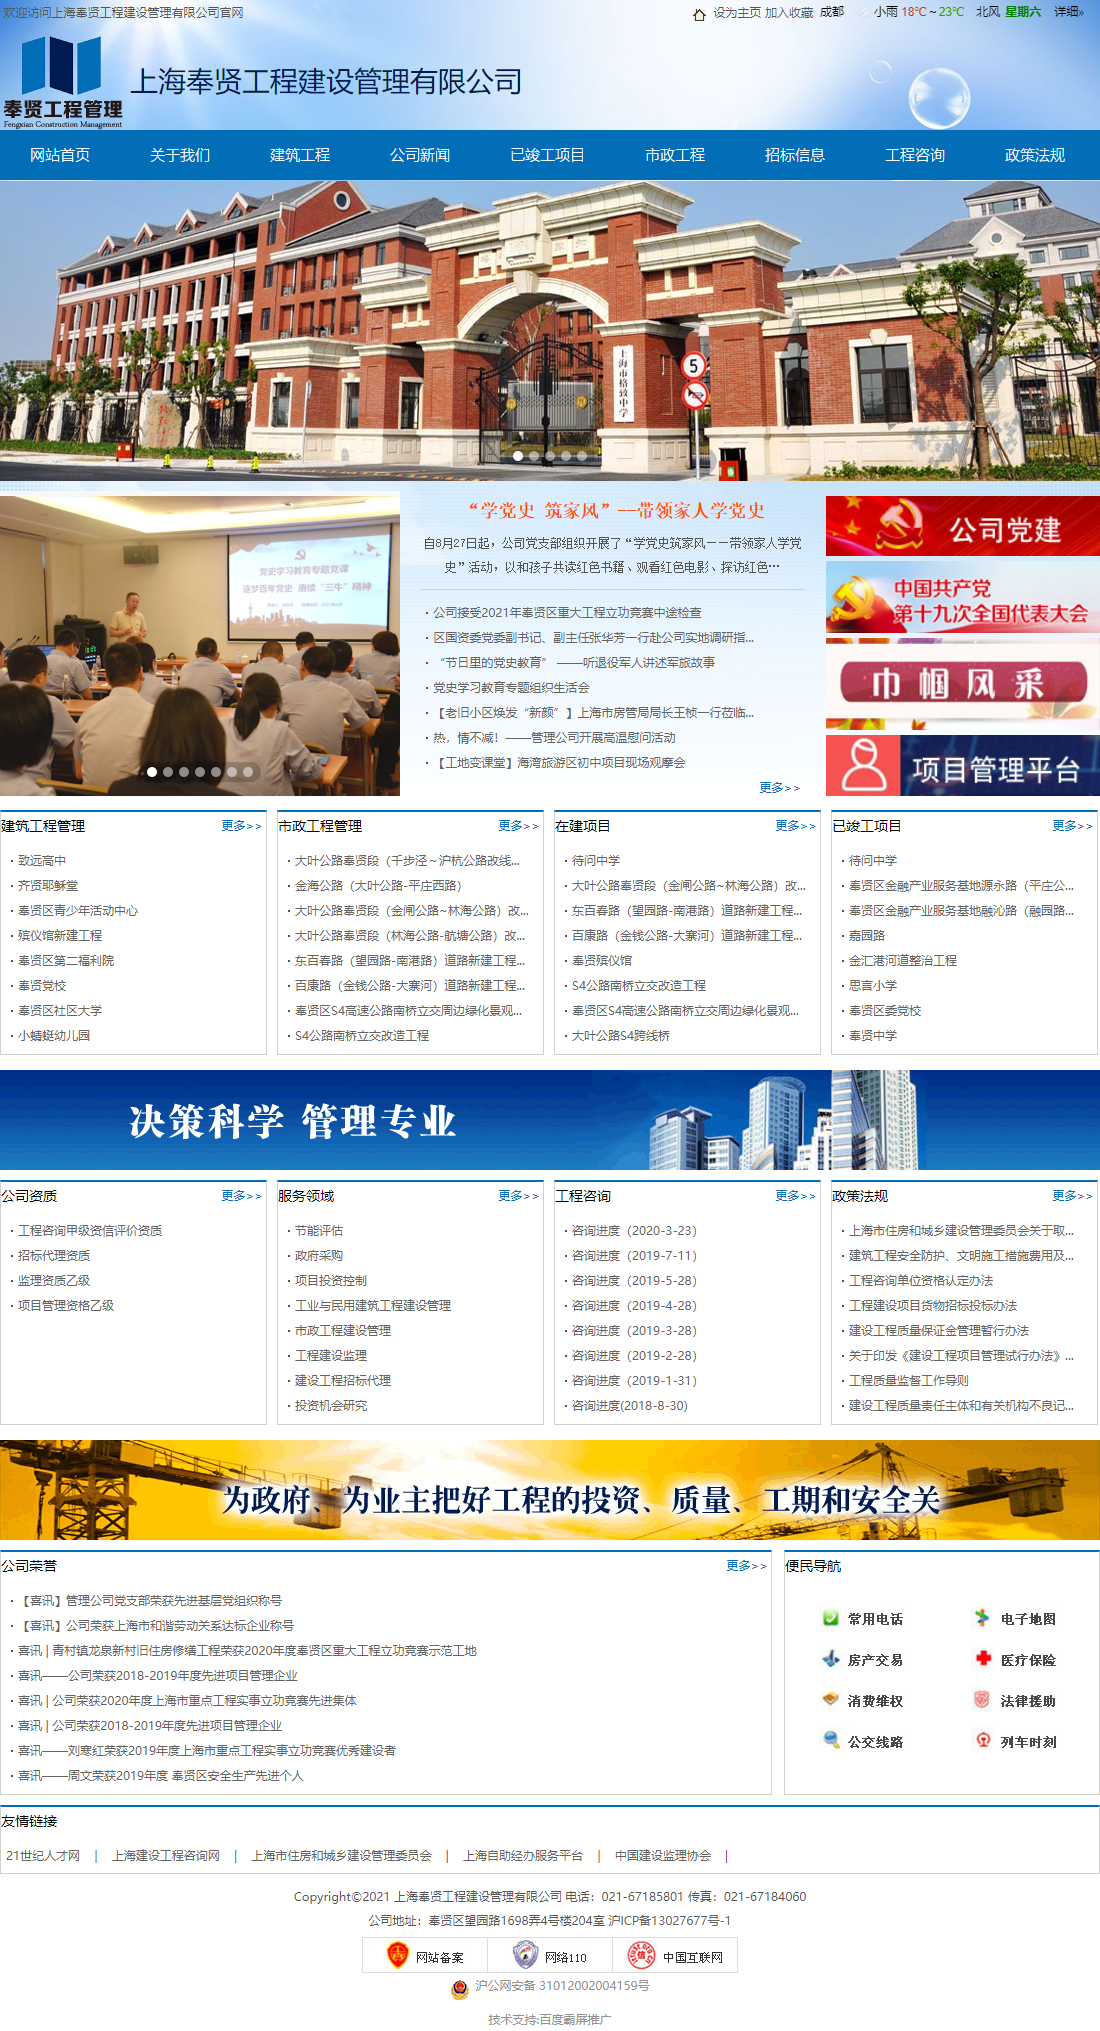 上海奉贤工程建设管理有限公司网站案例